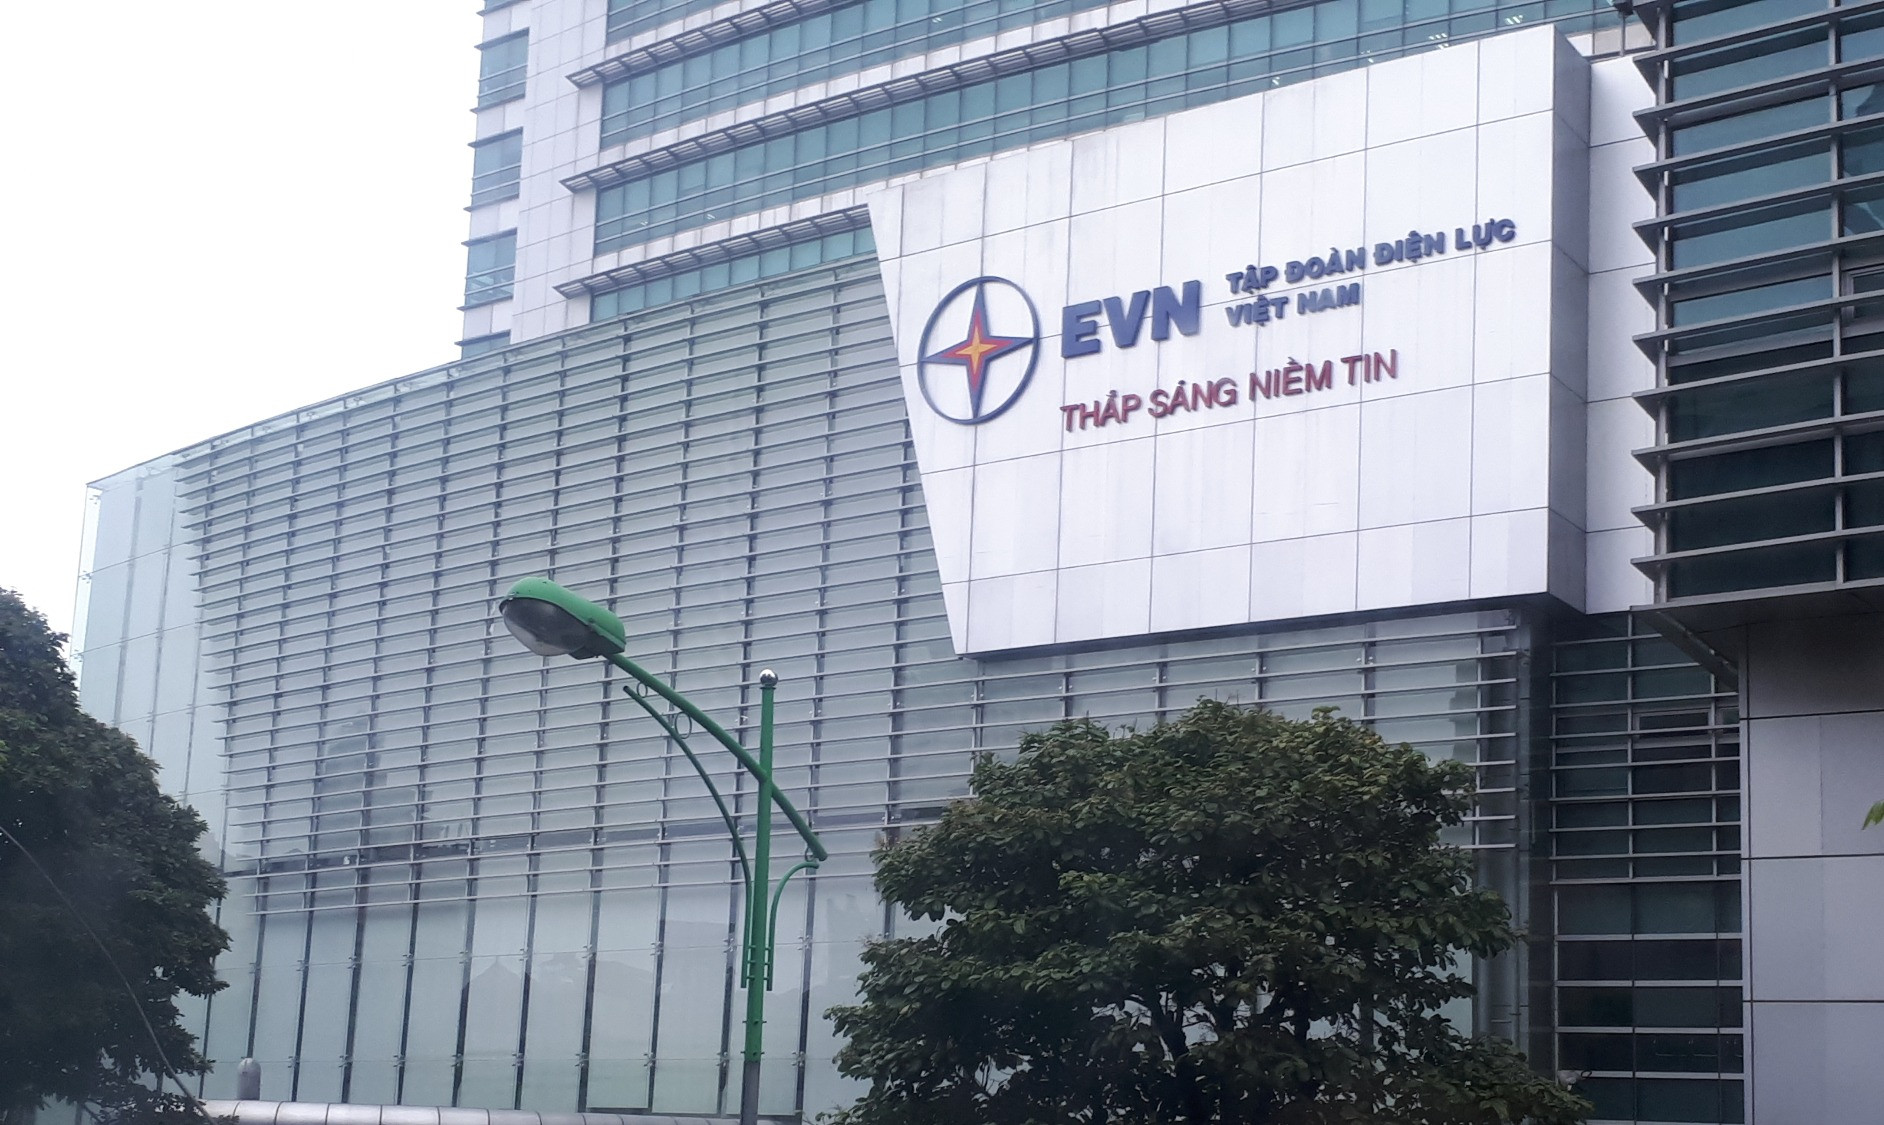 EVN là gì? Tìm hiểu về Tập đoàn Điện lực Việt Nam và vai trò quan trọng của nó